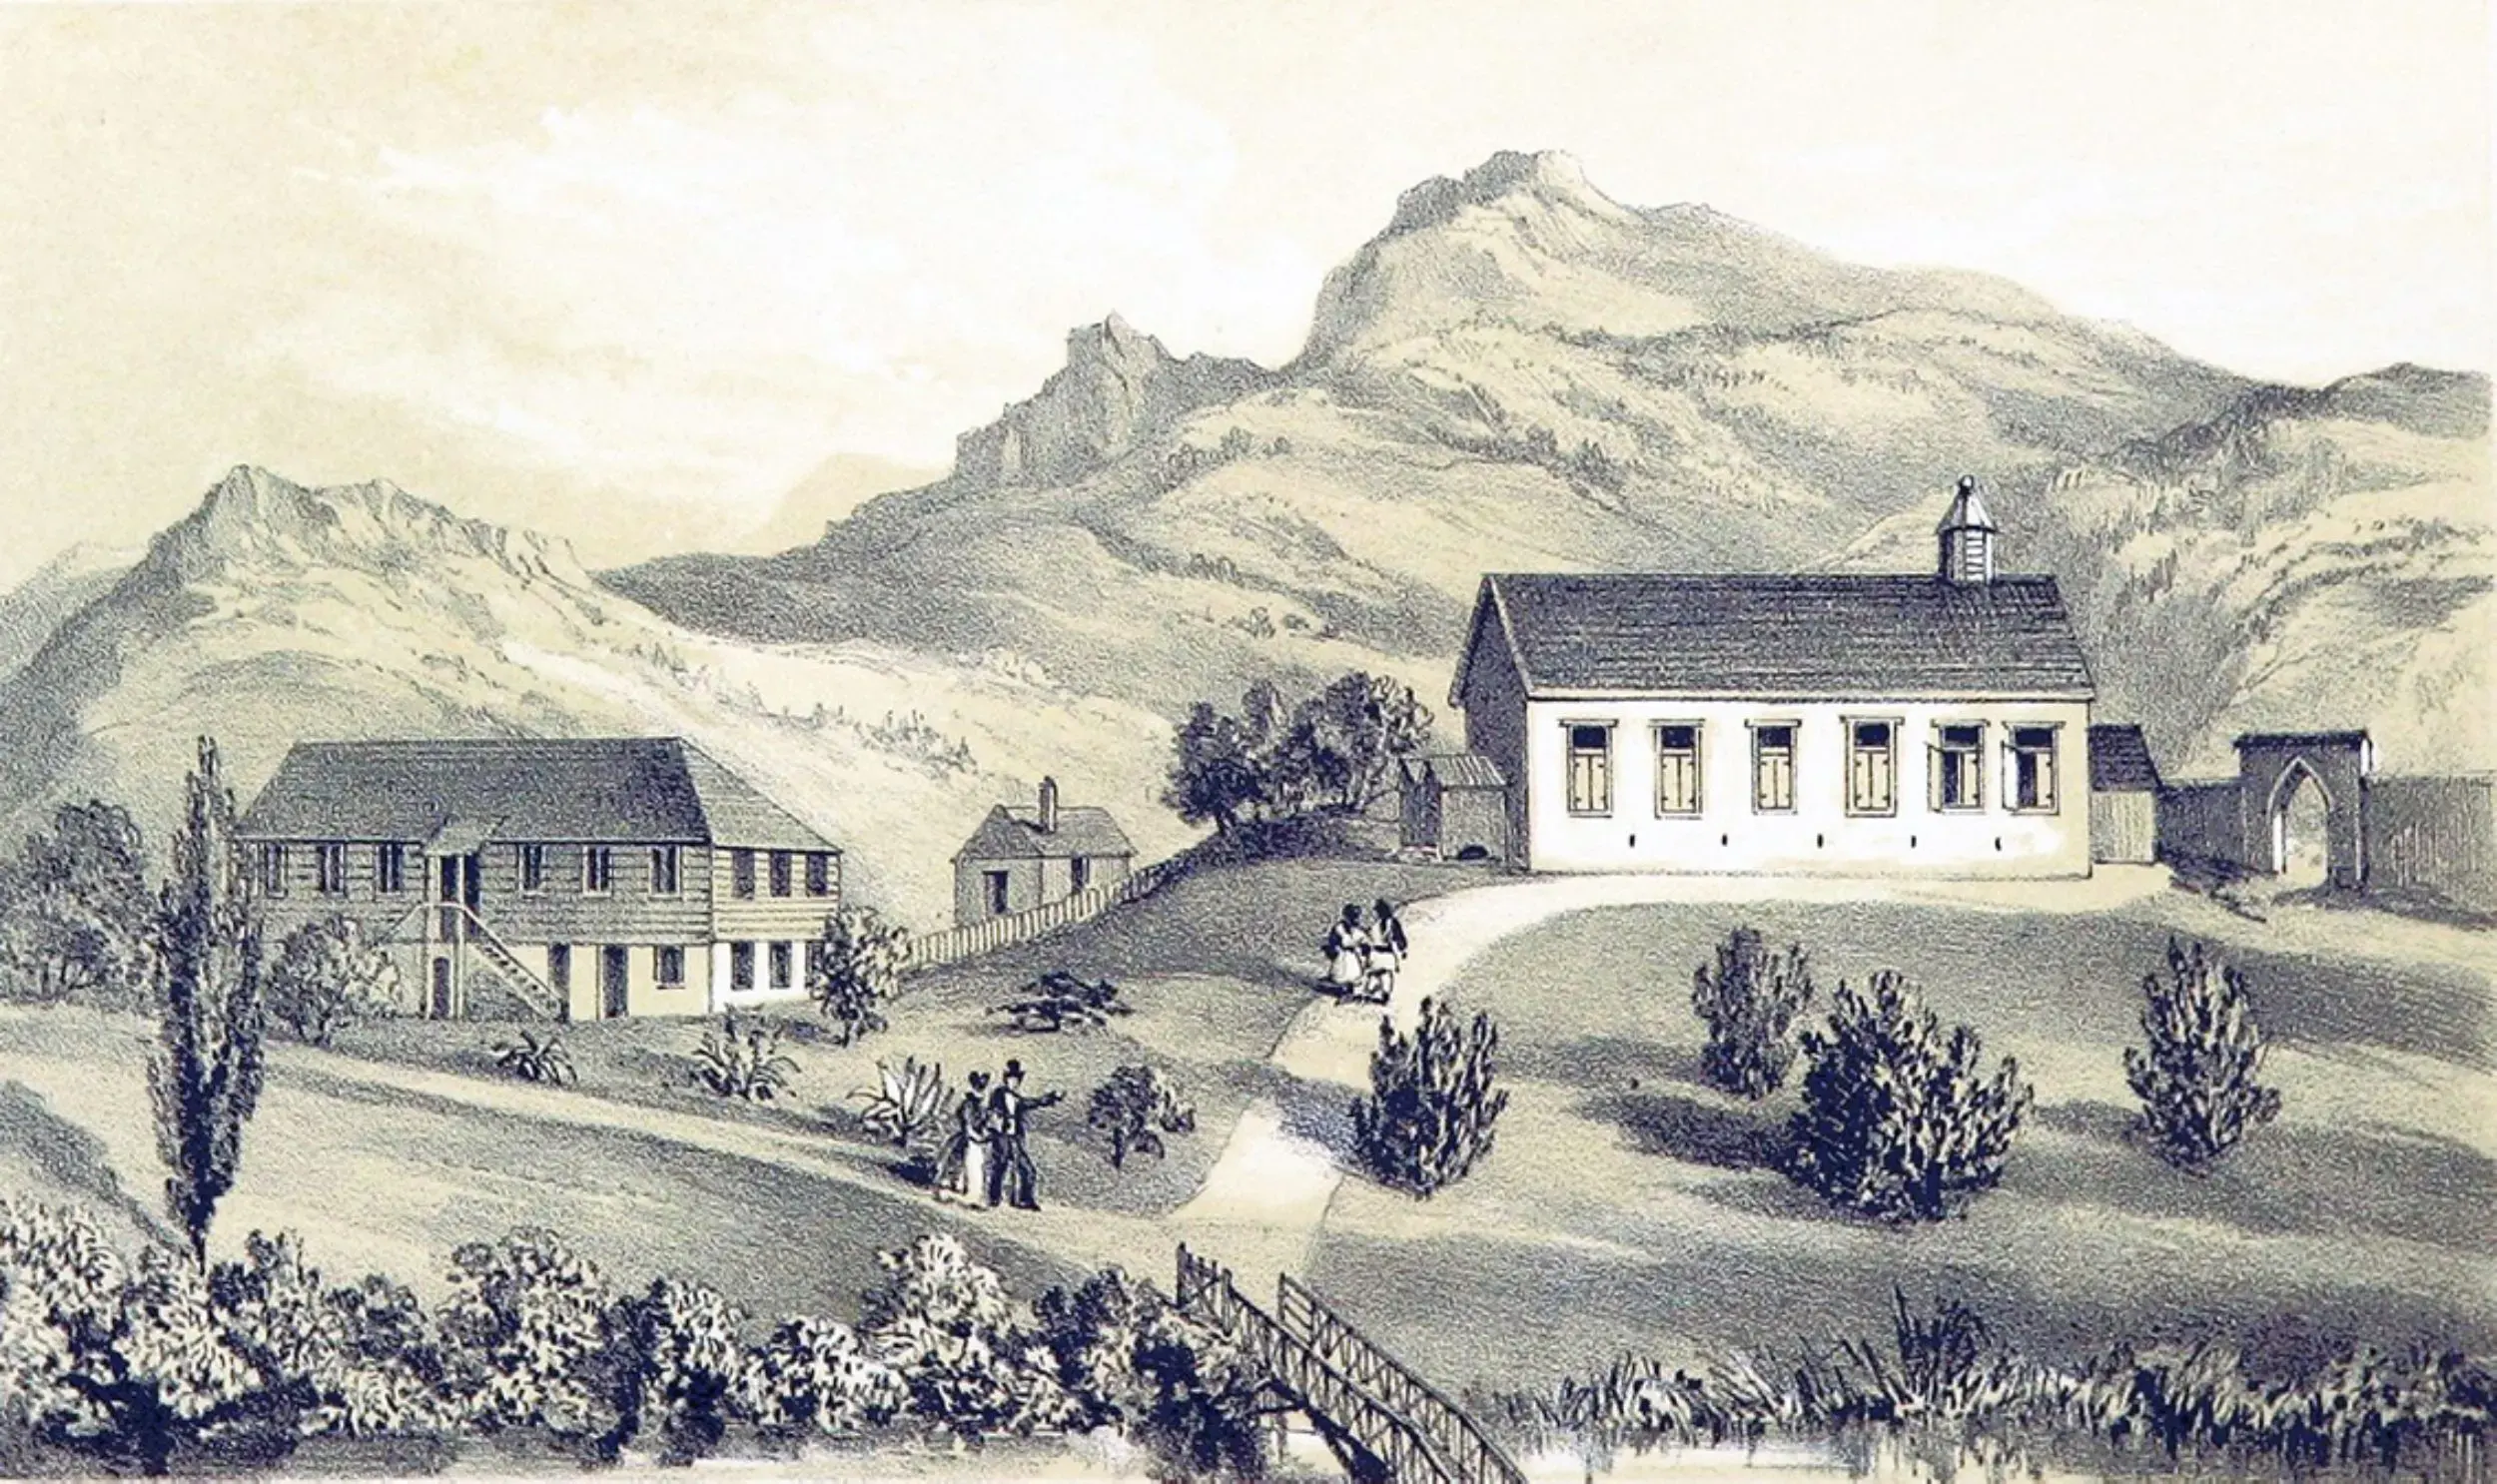 Station der Basler Mission in Regent, Sierra Leone, mit Missionshaus und Kirche, 1850